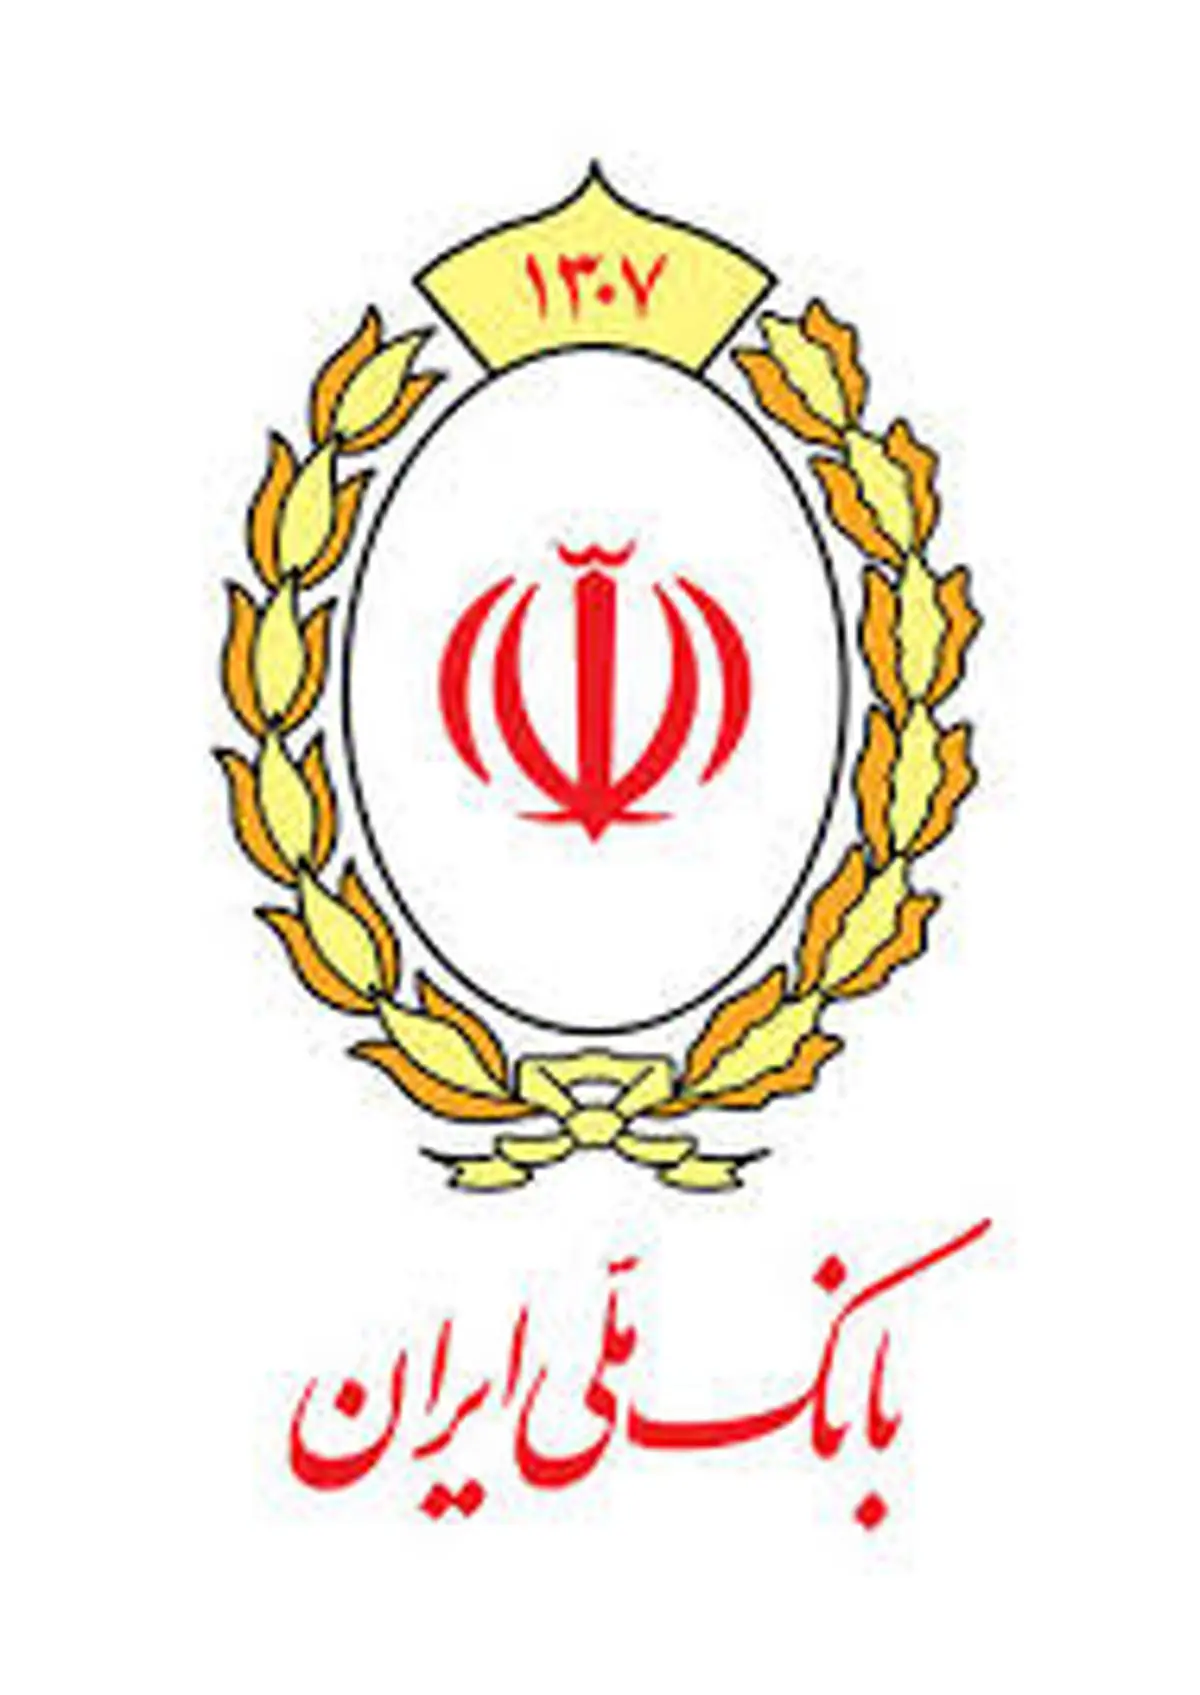 الزام اخذ شناسه برخط شهاب برای مشتریان حقوقی بانک ملی ایران

